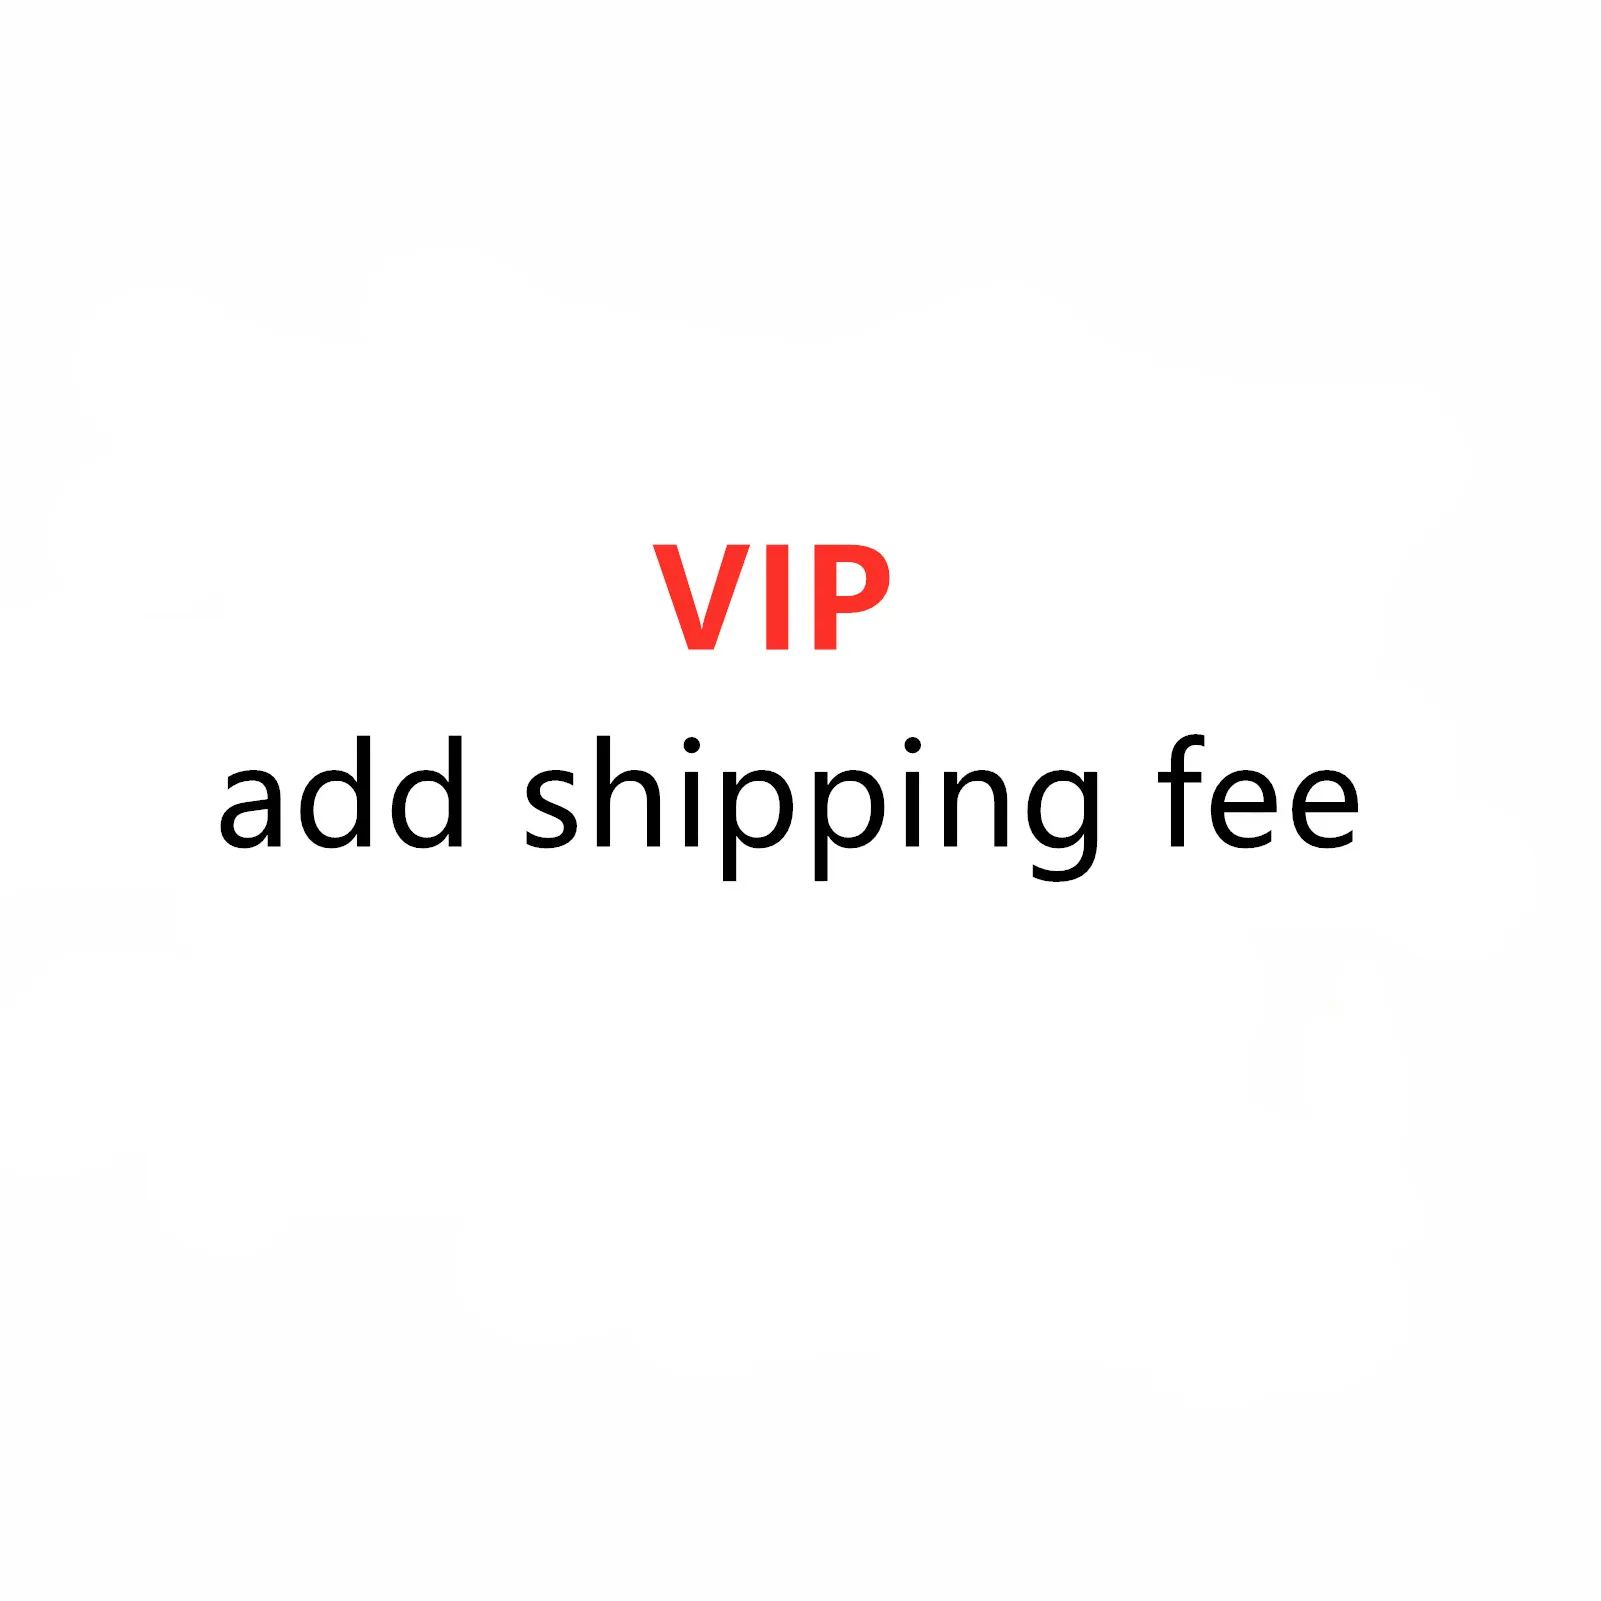 VIP add shipping fee